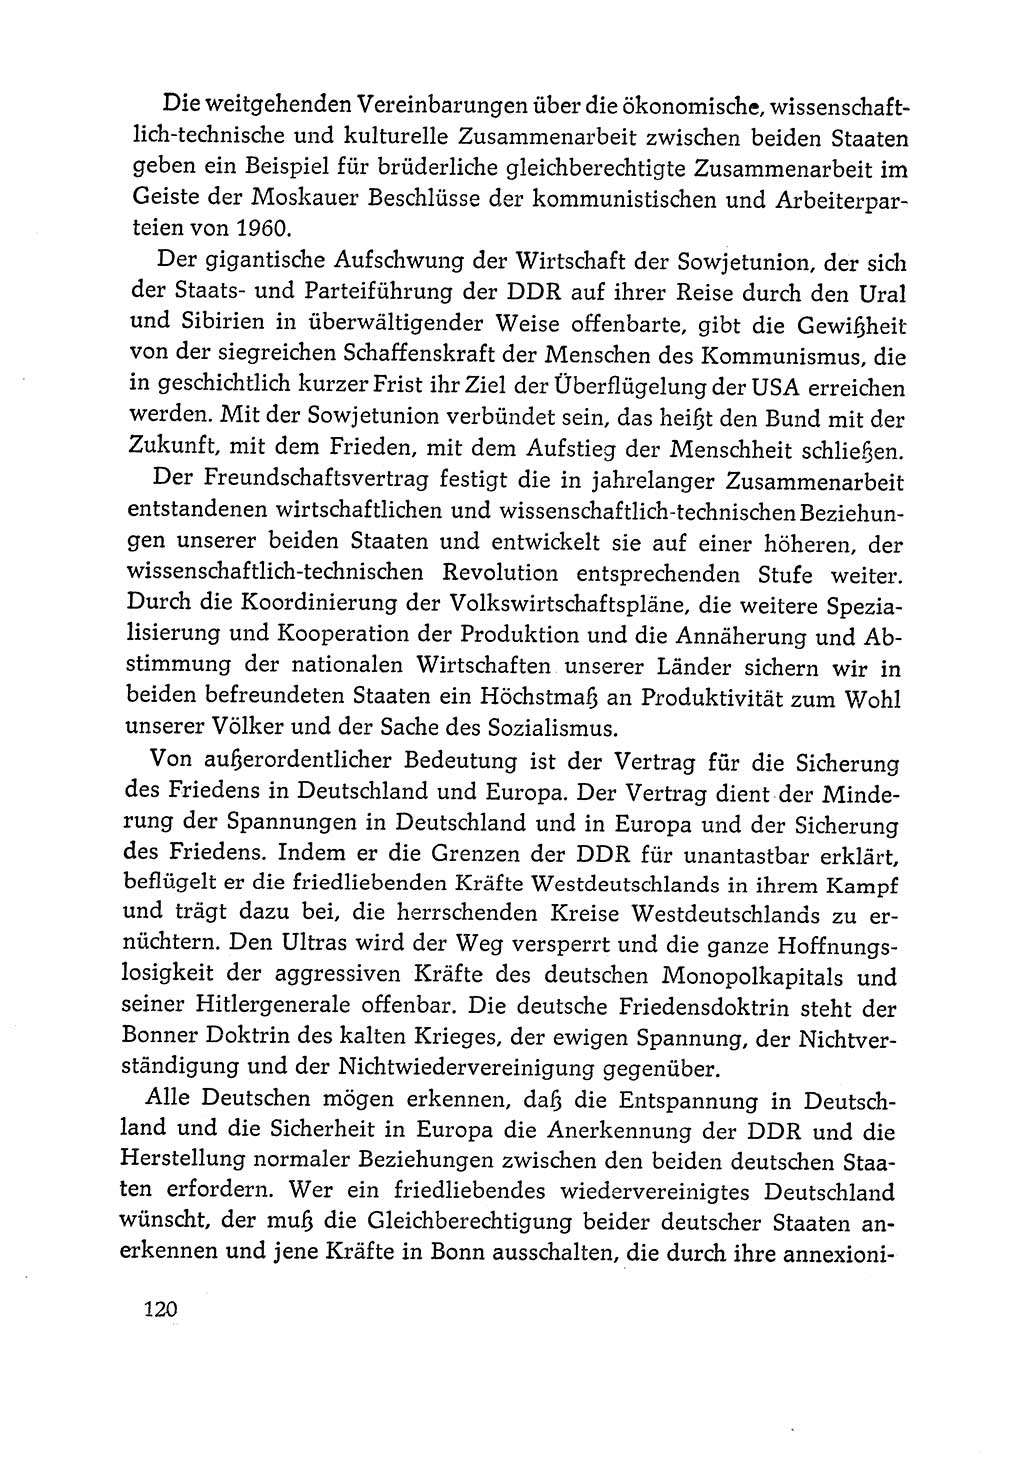 Dokumente der Sozialistischen Einheitspartei Deutschlands (SED) [Deutsche Demokratische Republik (DDR)] 1964-1965, Seite 120 (Dok. SED DDR 1964-1965, S. 120)